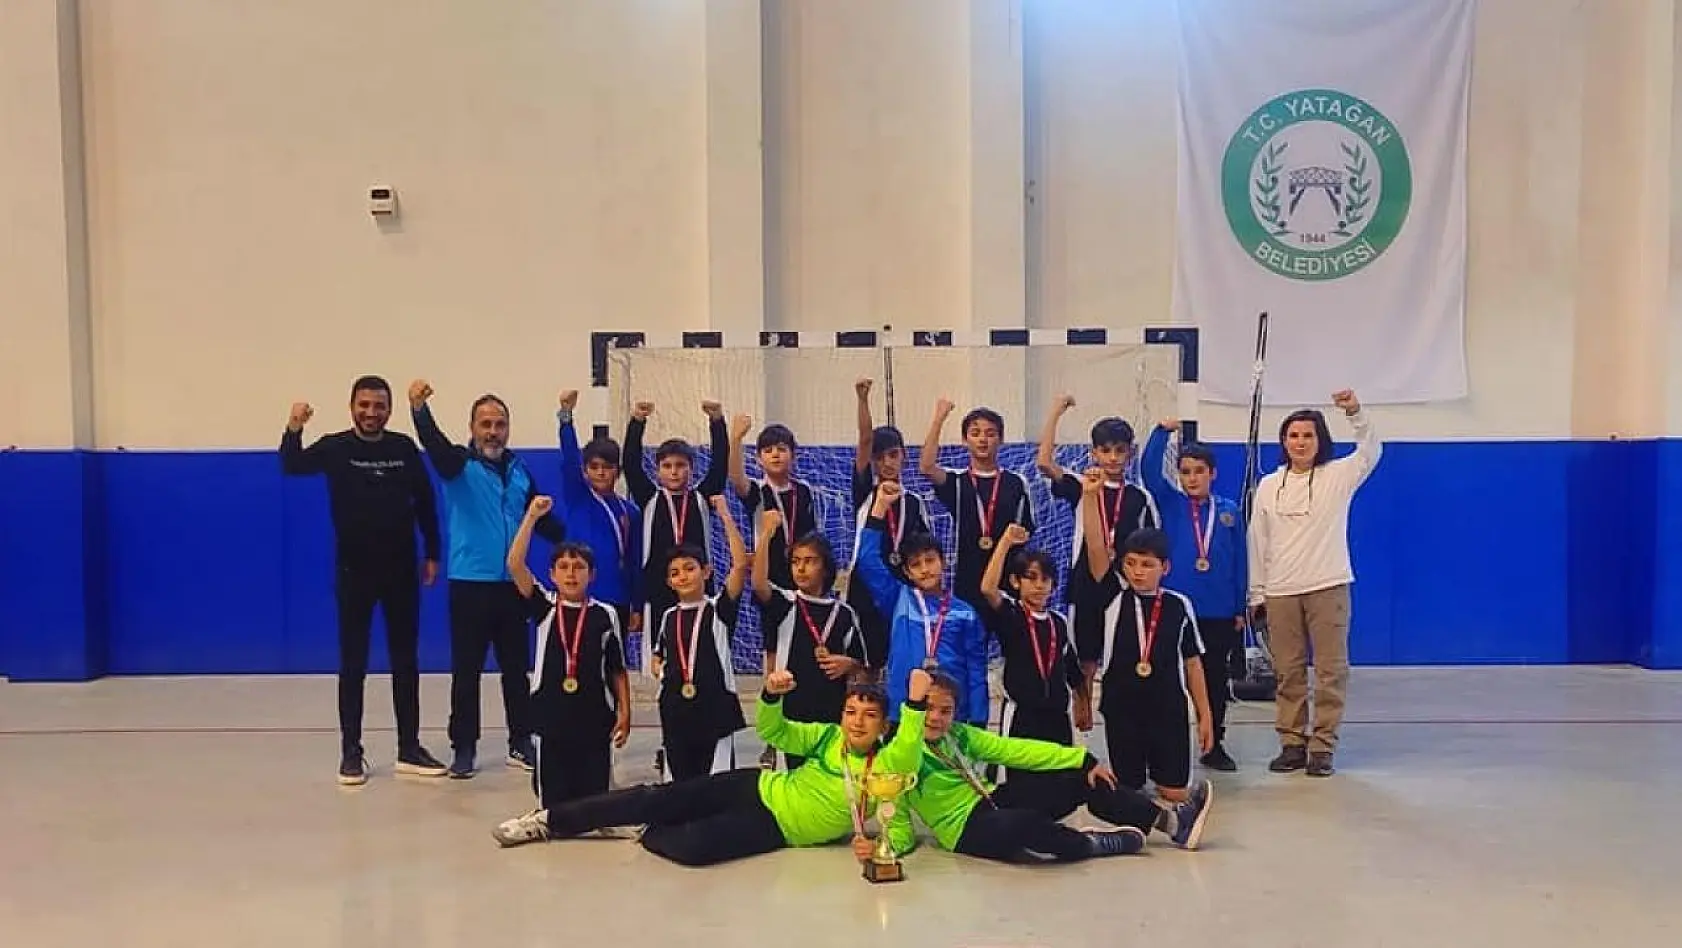 Köyceğiz Yunus Emre Ortaokulu hentbolda il şampiyonu oldu